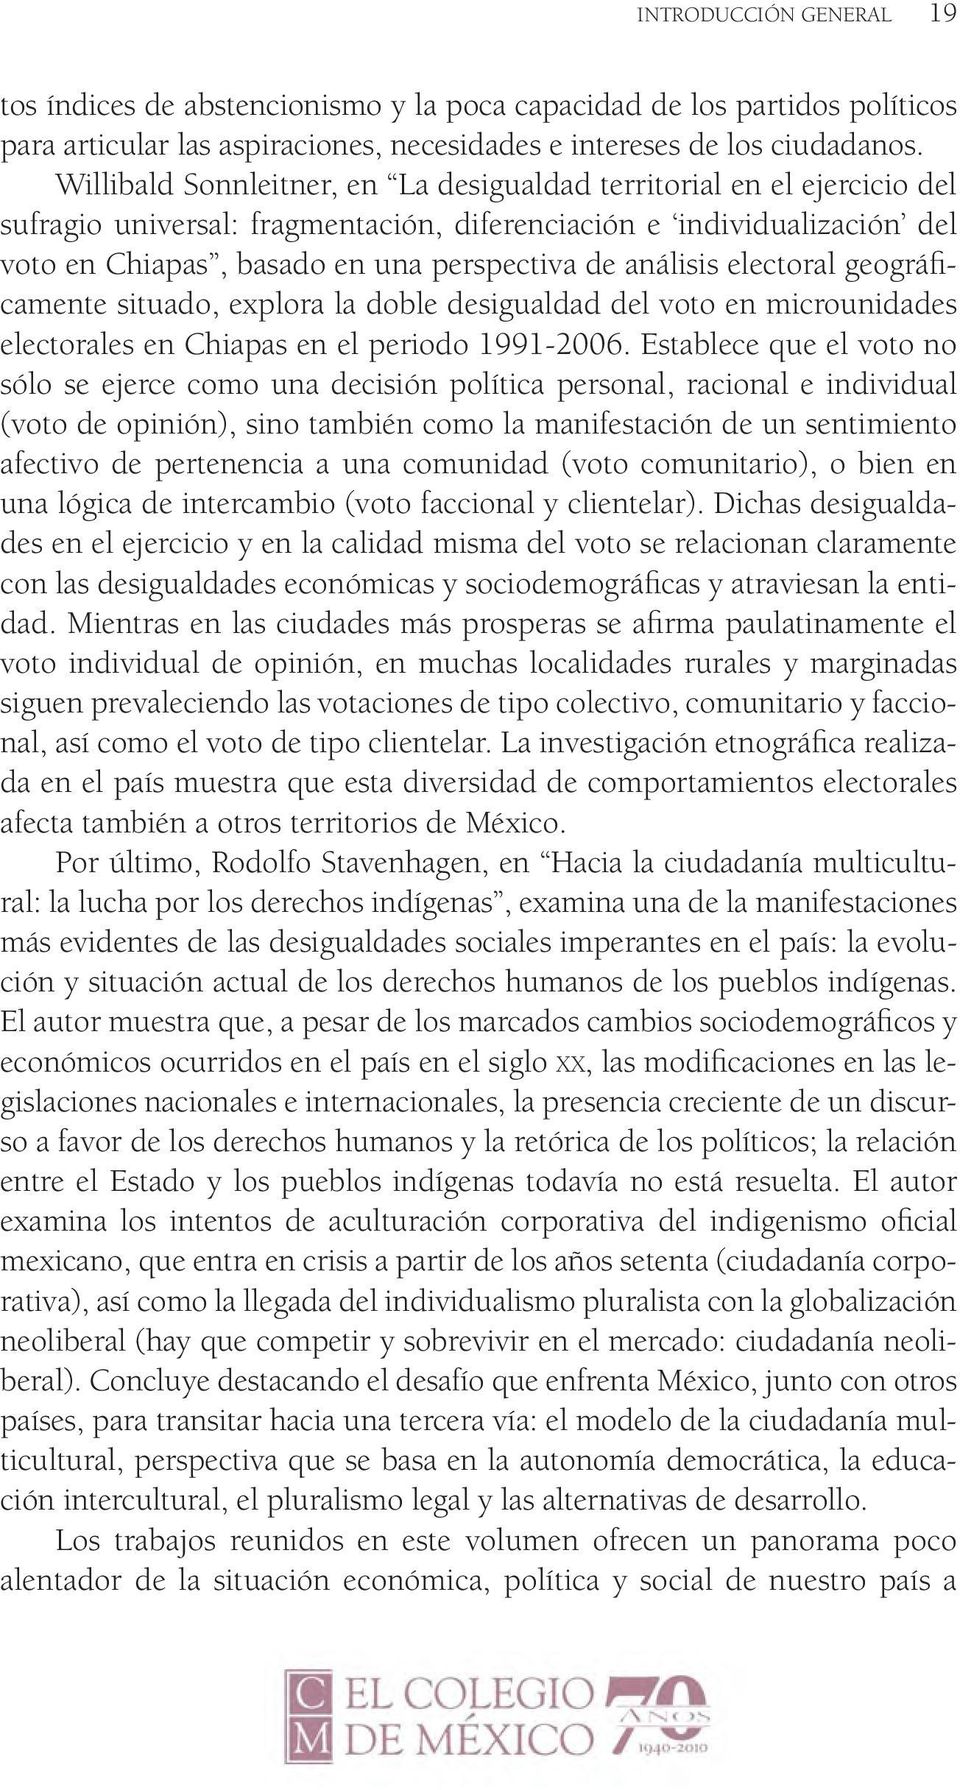 análisis electoral geográficamente situado, explora la doble desigualdad del voto en microunidades electorales en Chiapas en el periodo 1991-2006.